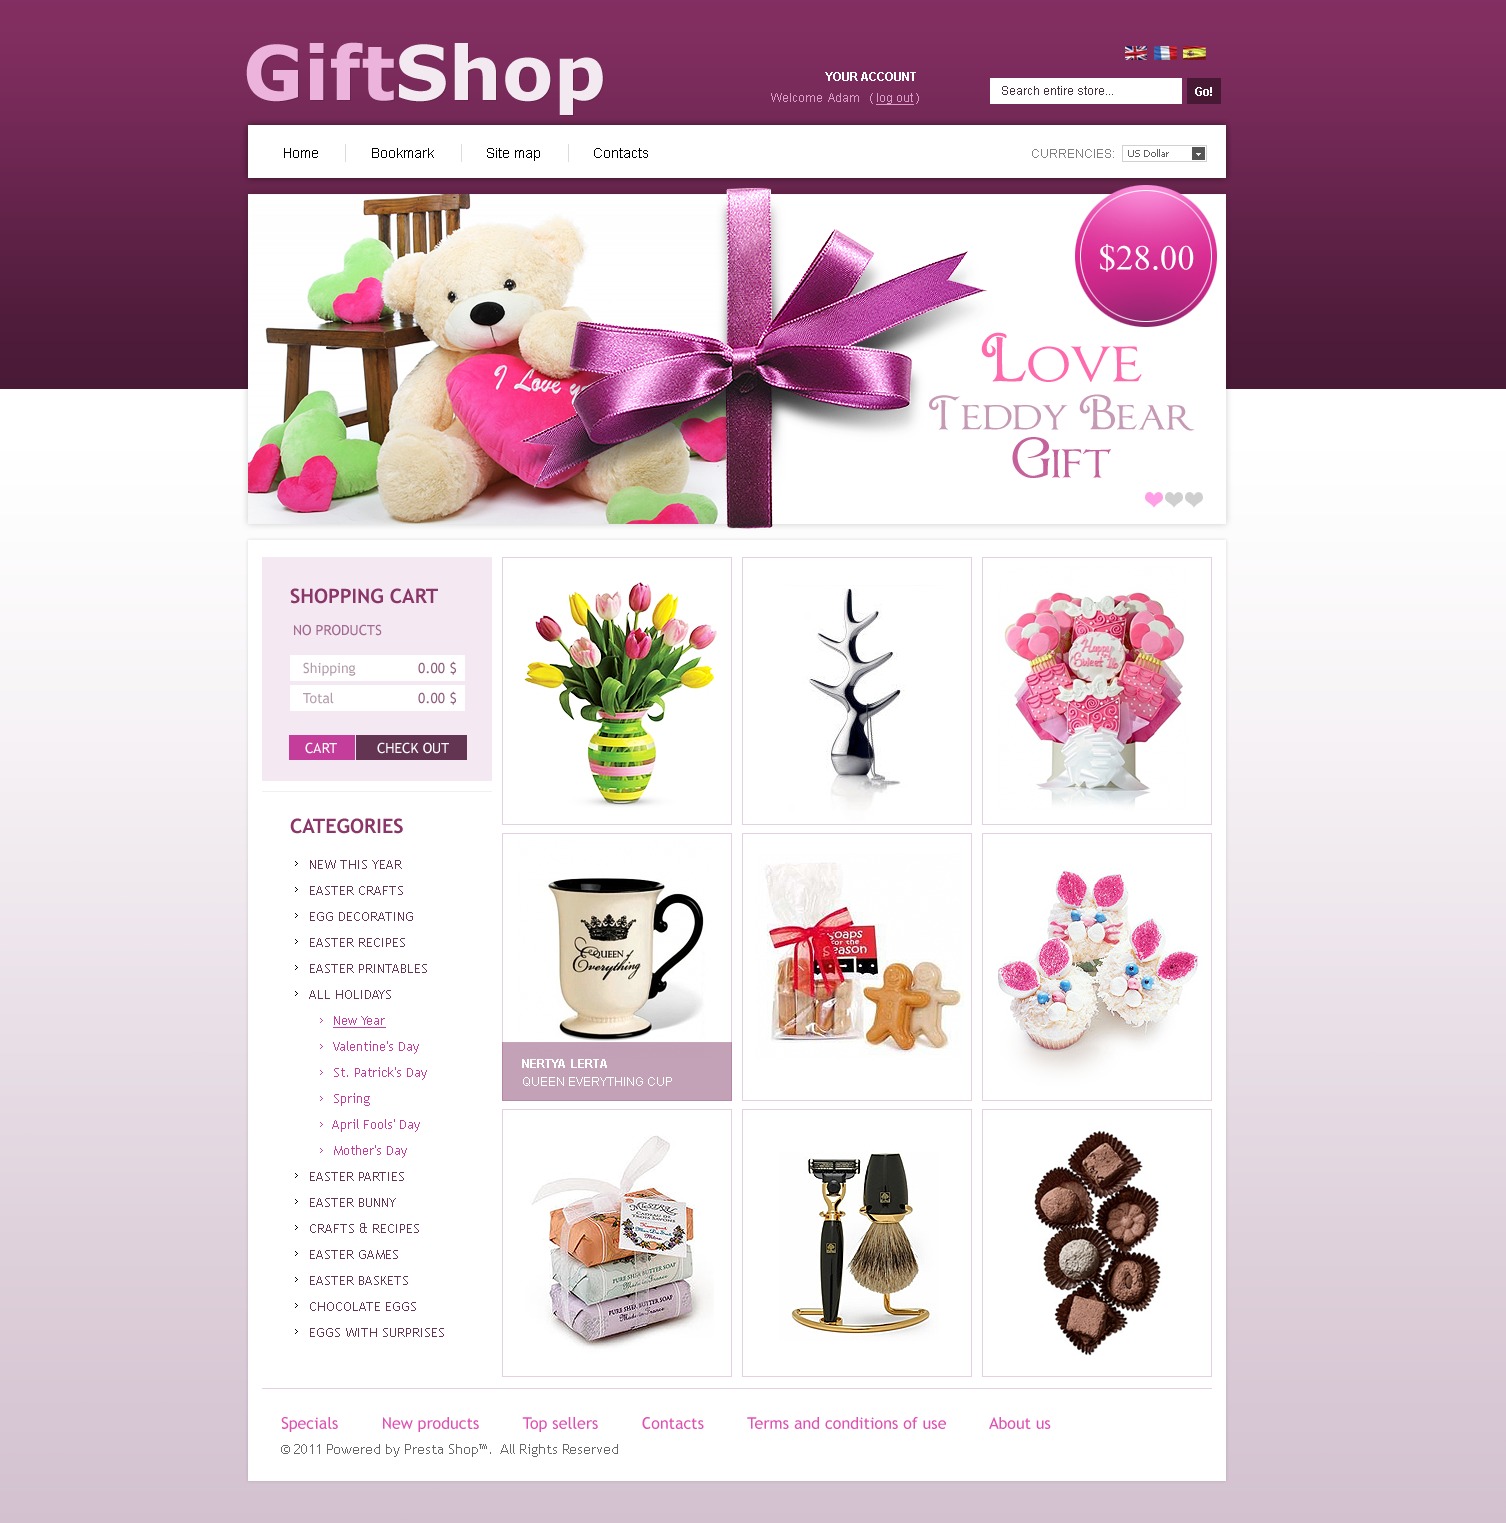 Сайт подарков интернет магазин